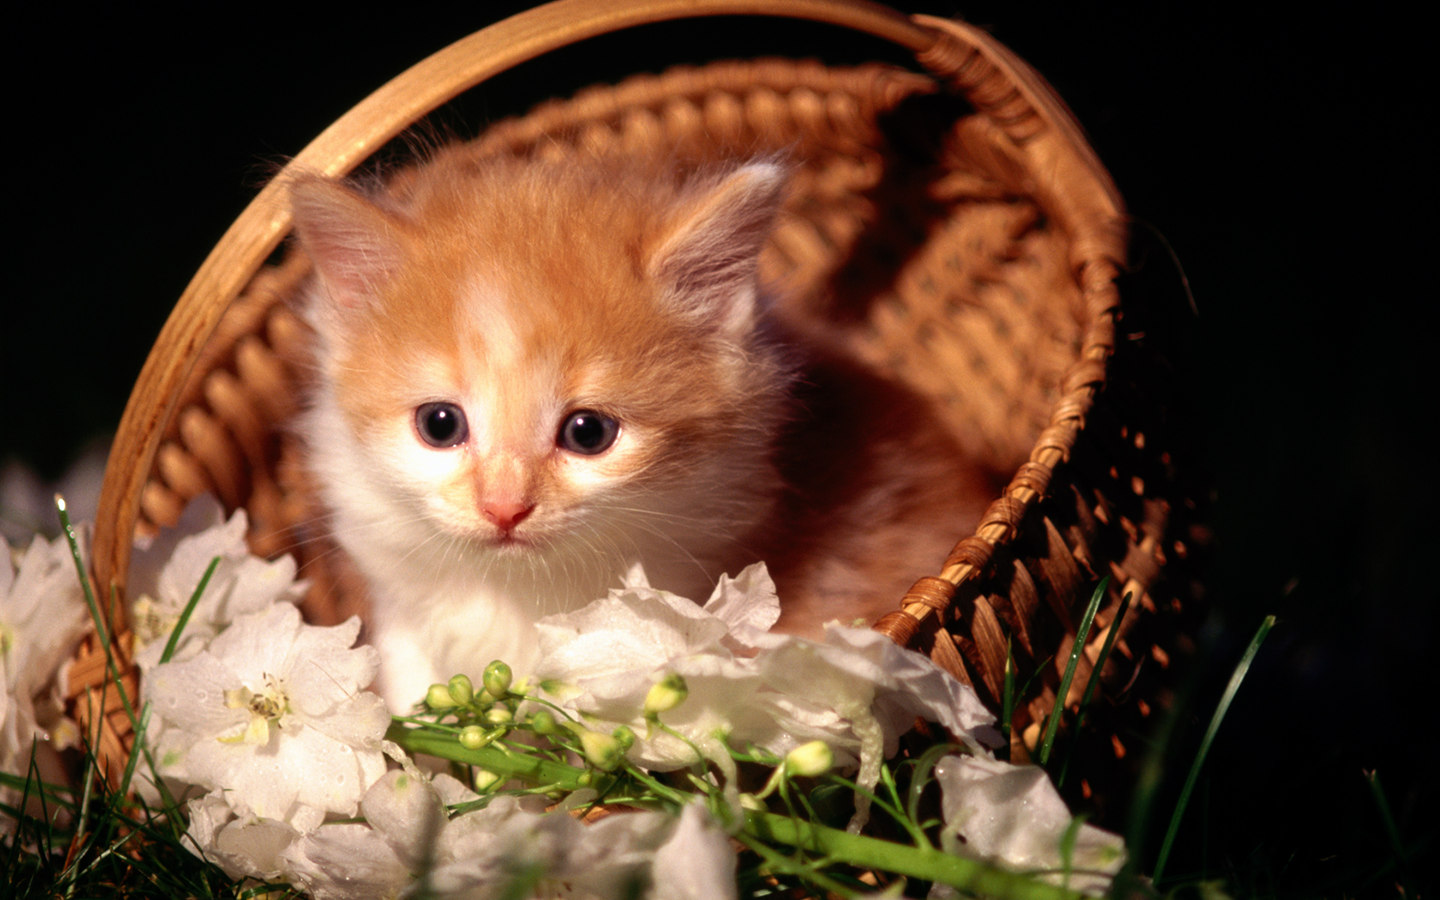 Sweet Kitty - Cute Kitten In Basket - HD Wallpaper 